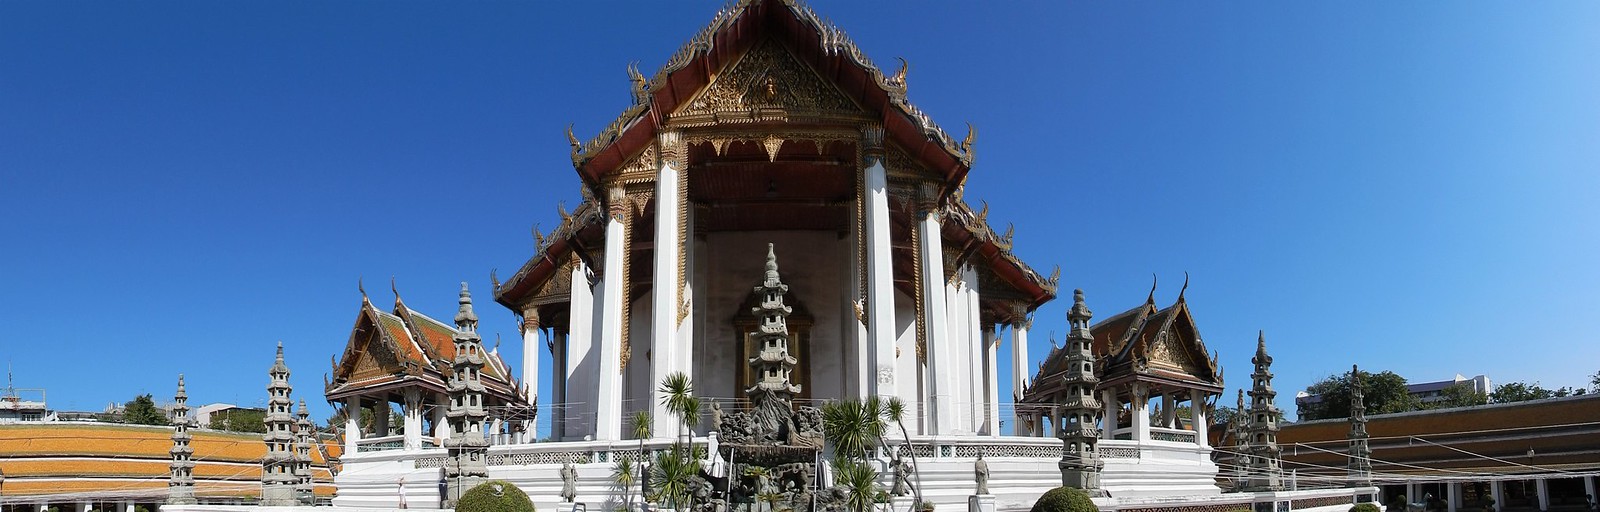 Más Bangkok: Wat Suthat, Golden Mount, Jim Thompson, Santuario Erawan y Patpong - TAILANDIA POR LIBRE: TEMPLOS, ISLAS Y PLAYAS (26)